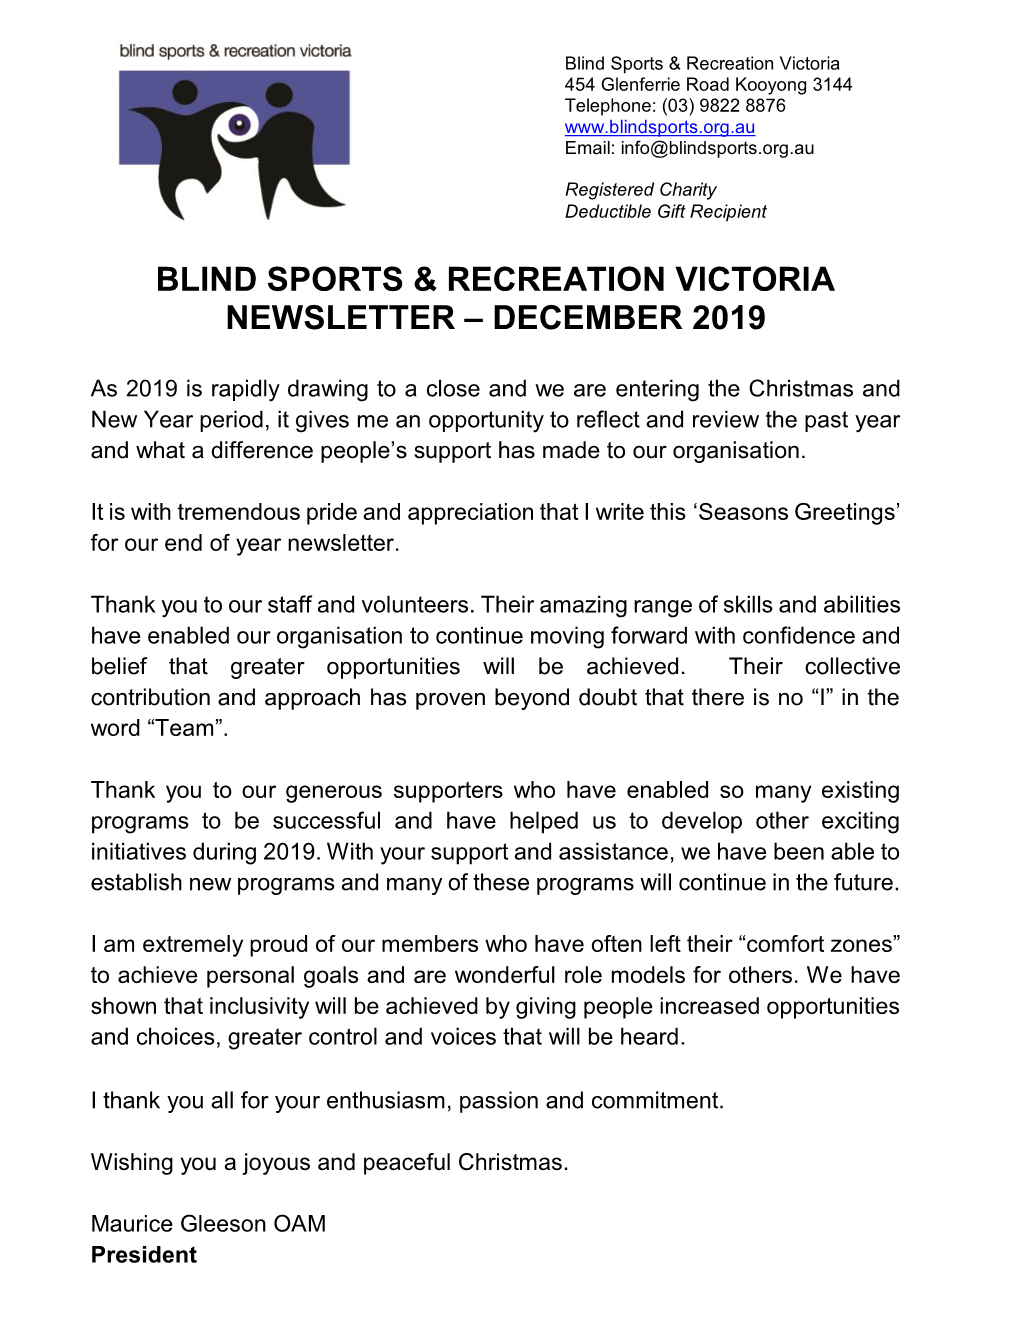 Blind Sports & Recreation Victoria Newsletter December 2019